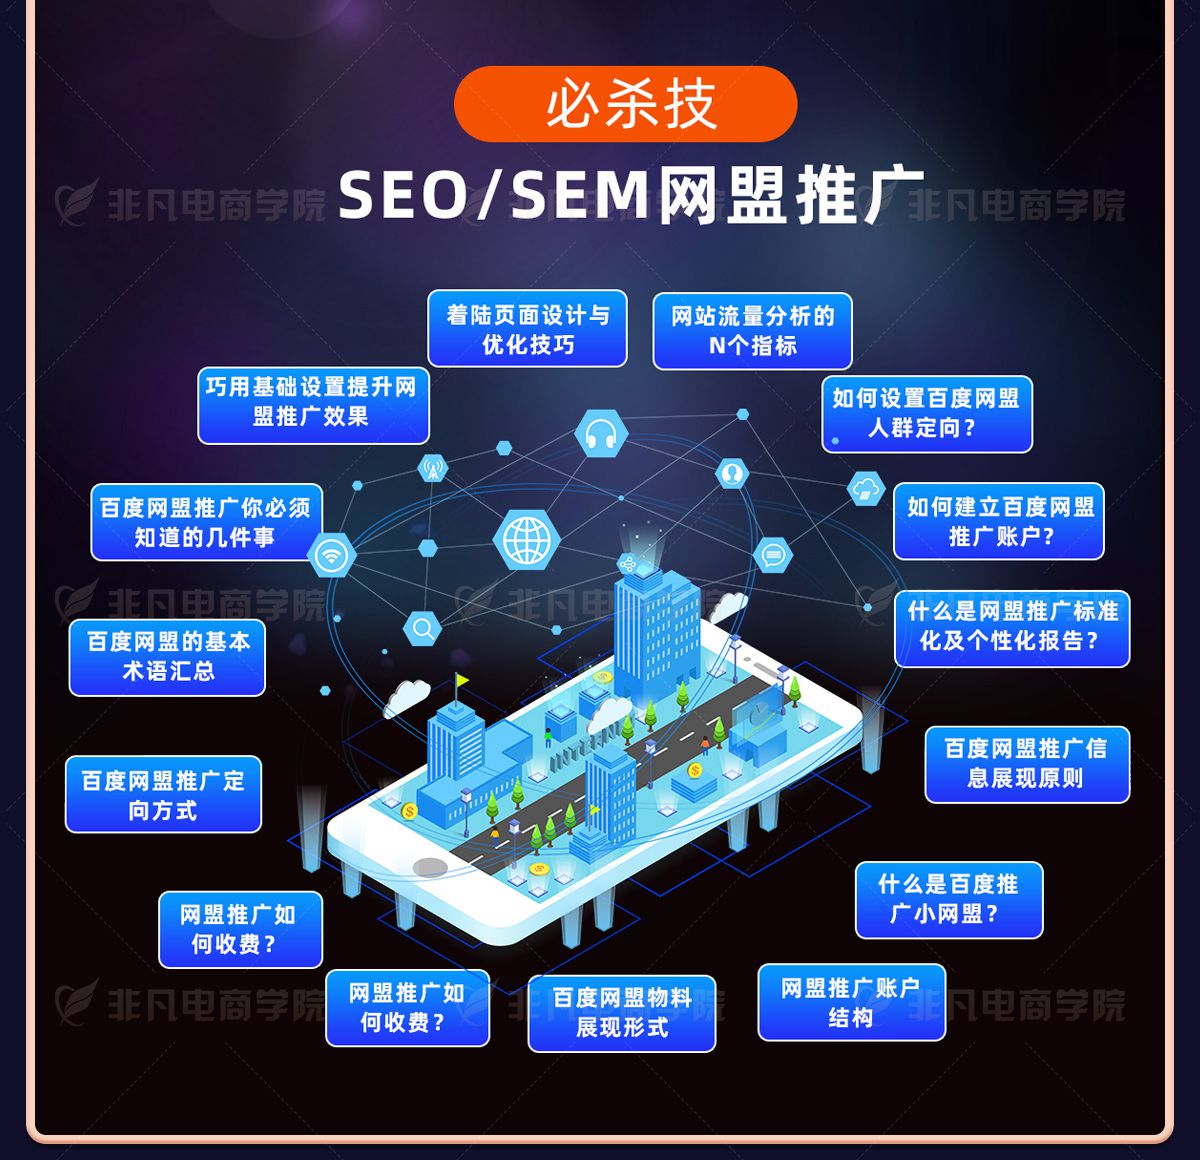 上海网络营销培训